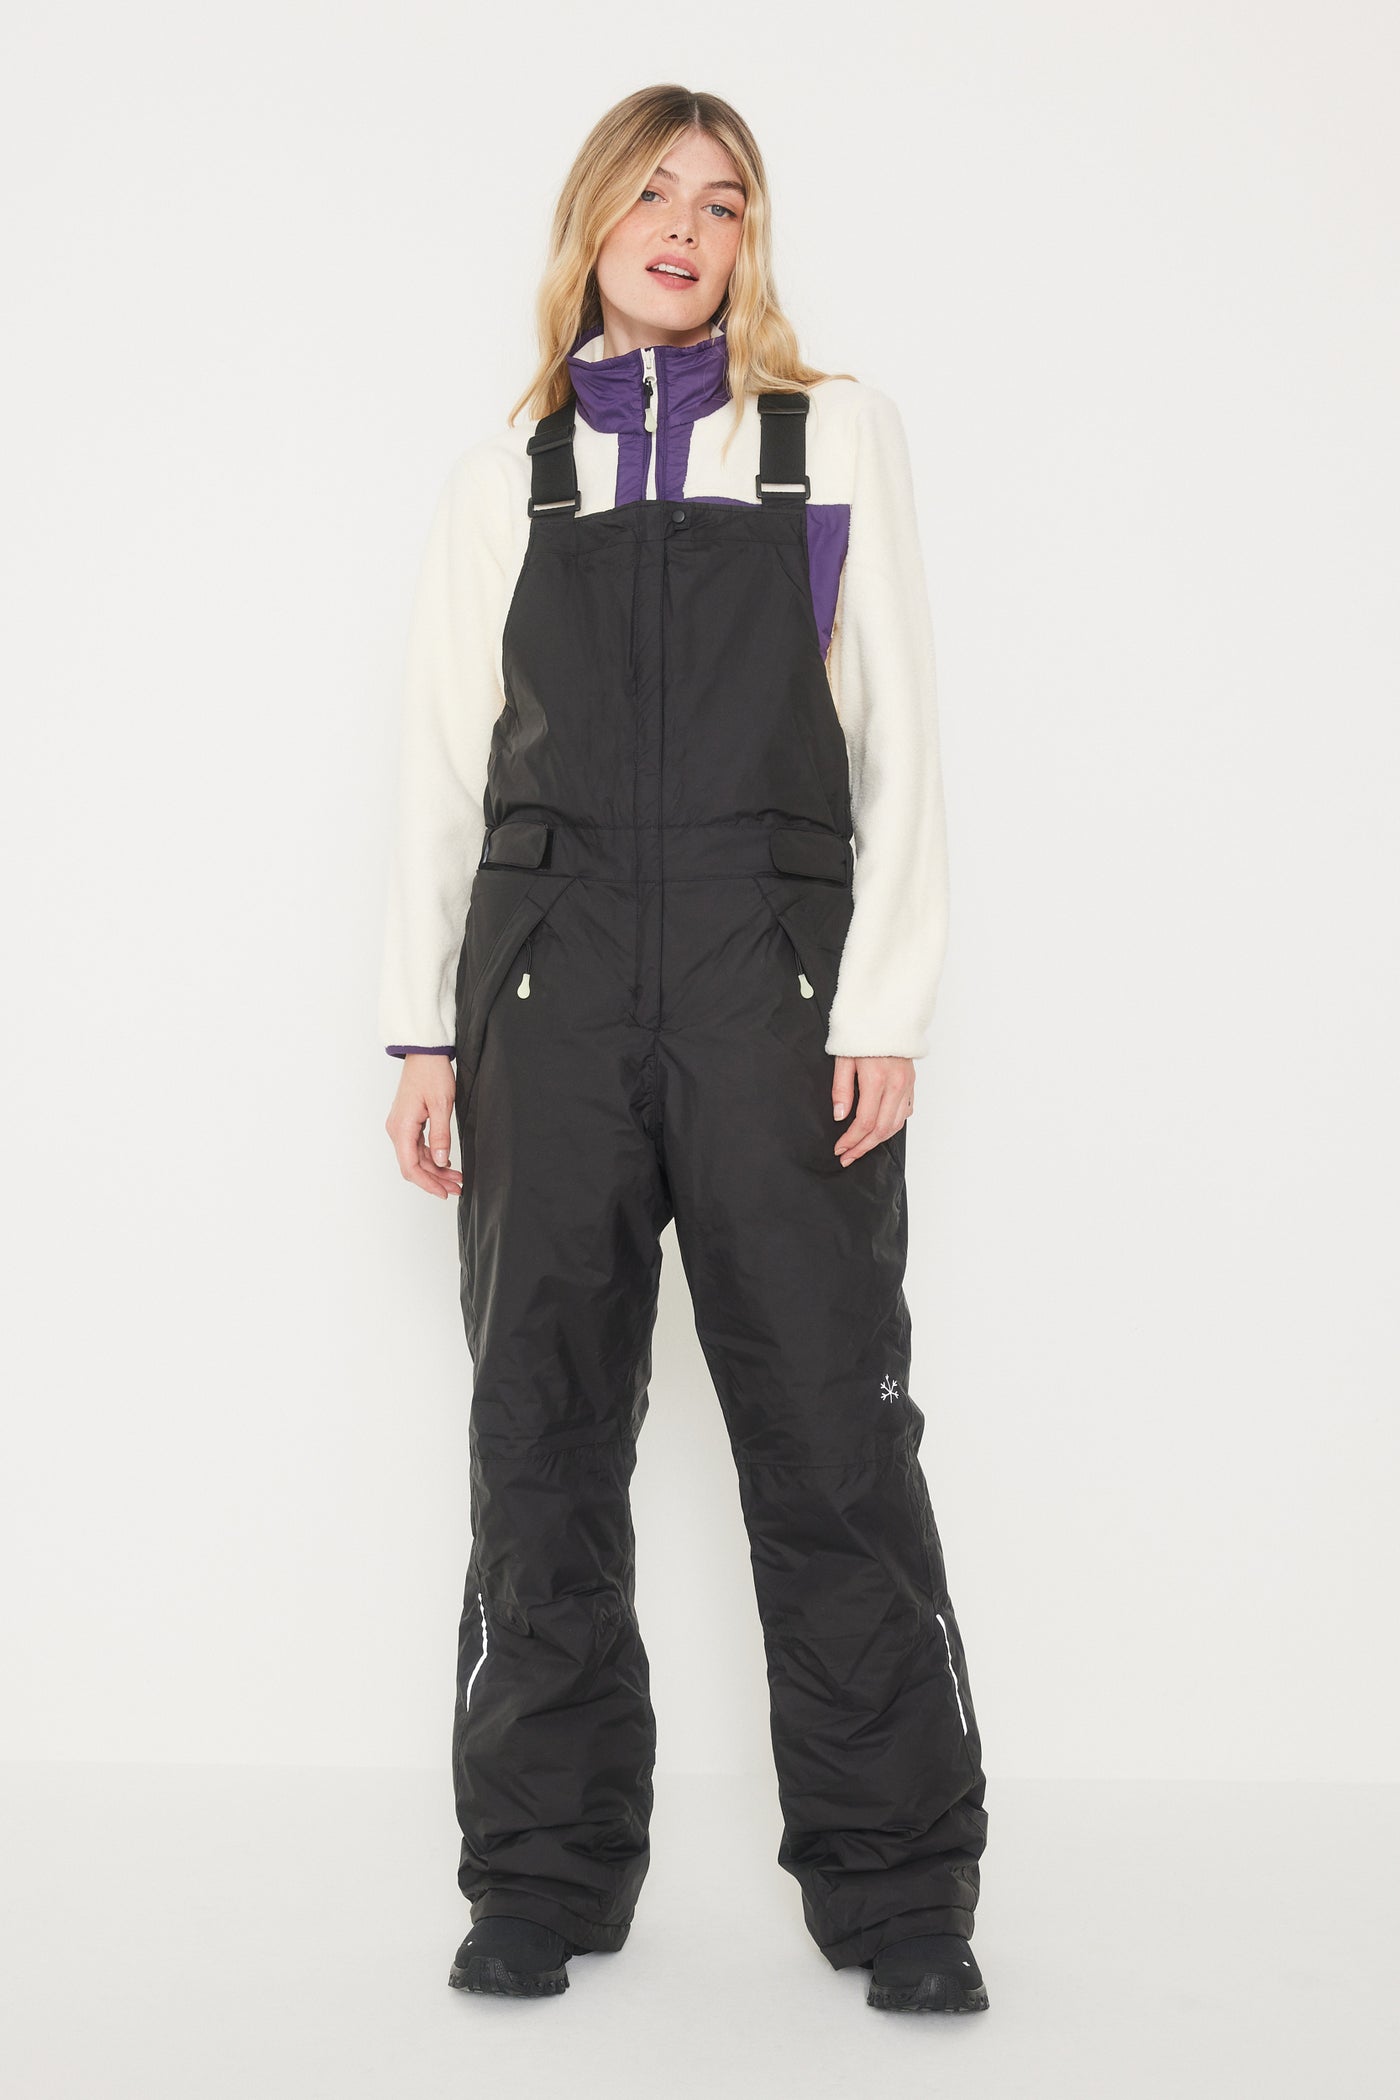 FOSFO Women's Snow Bib Pants - AK80010